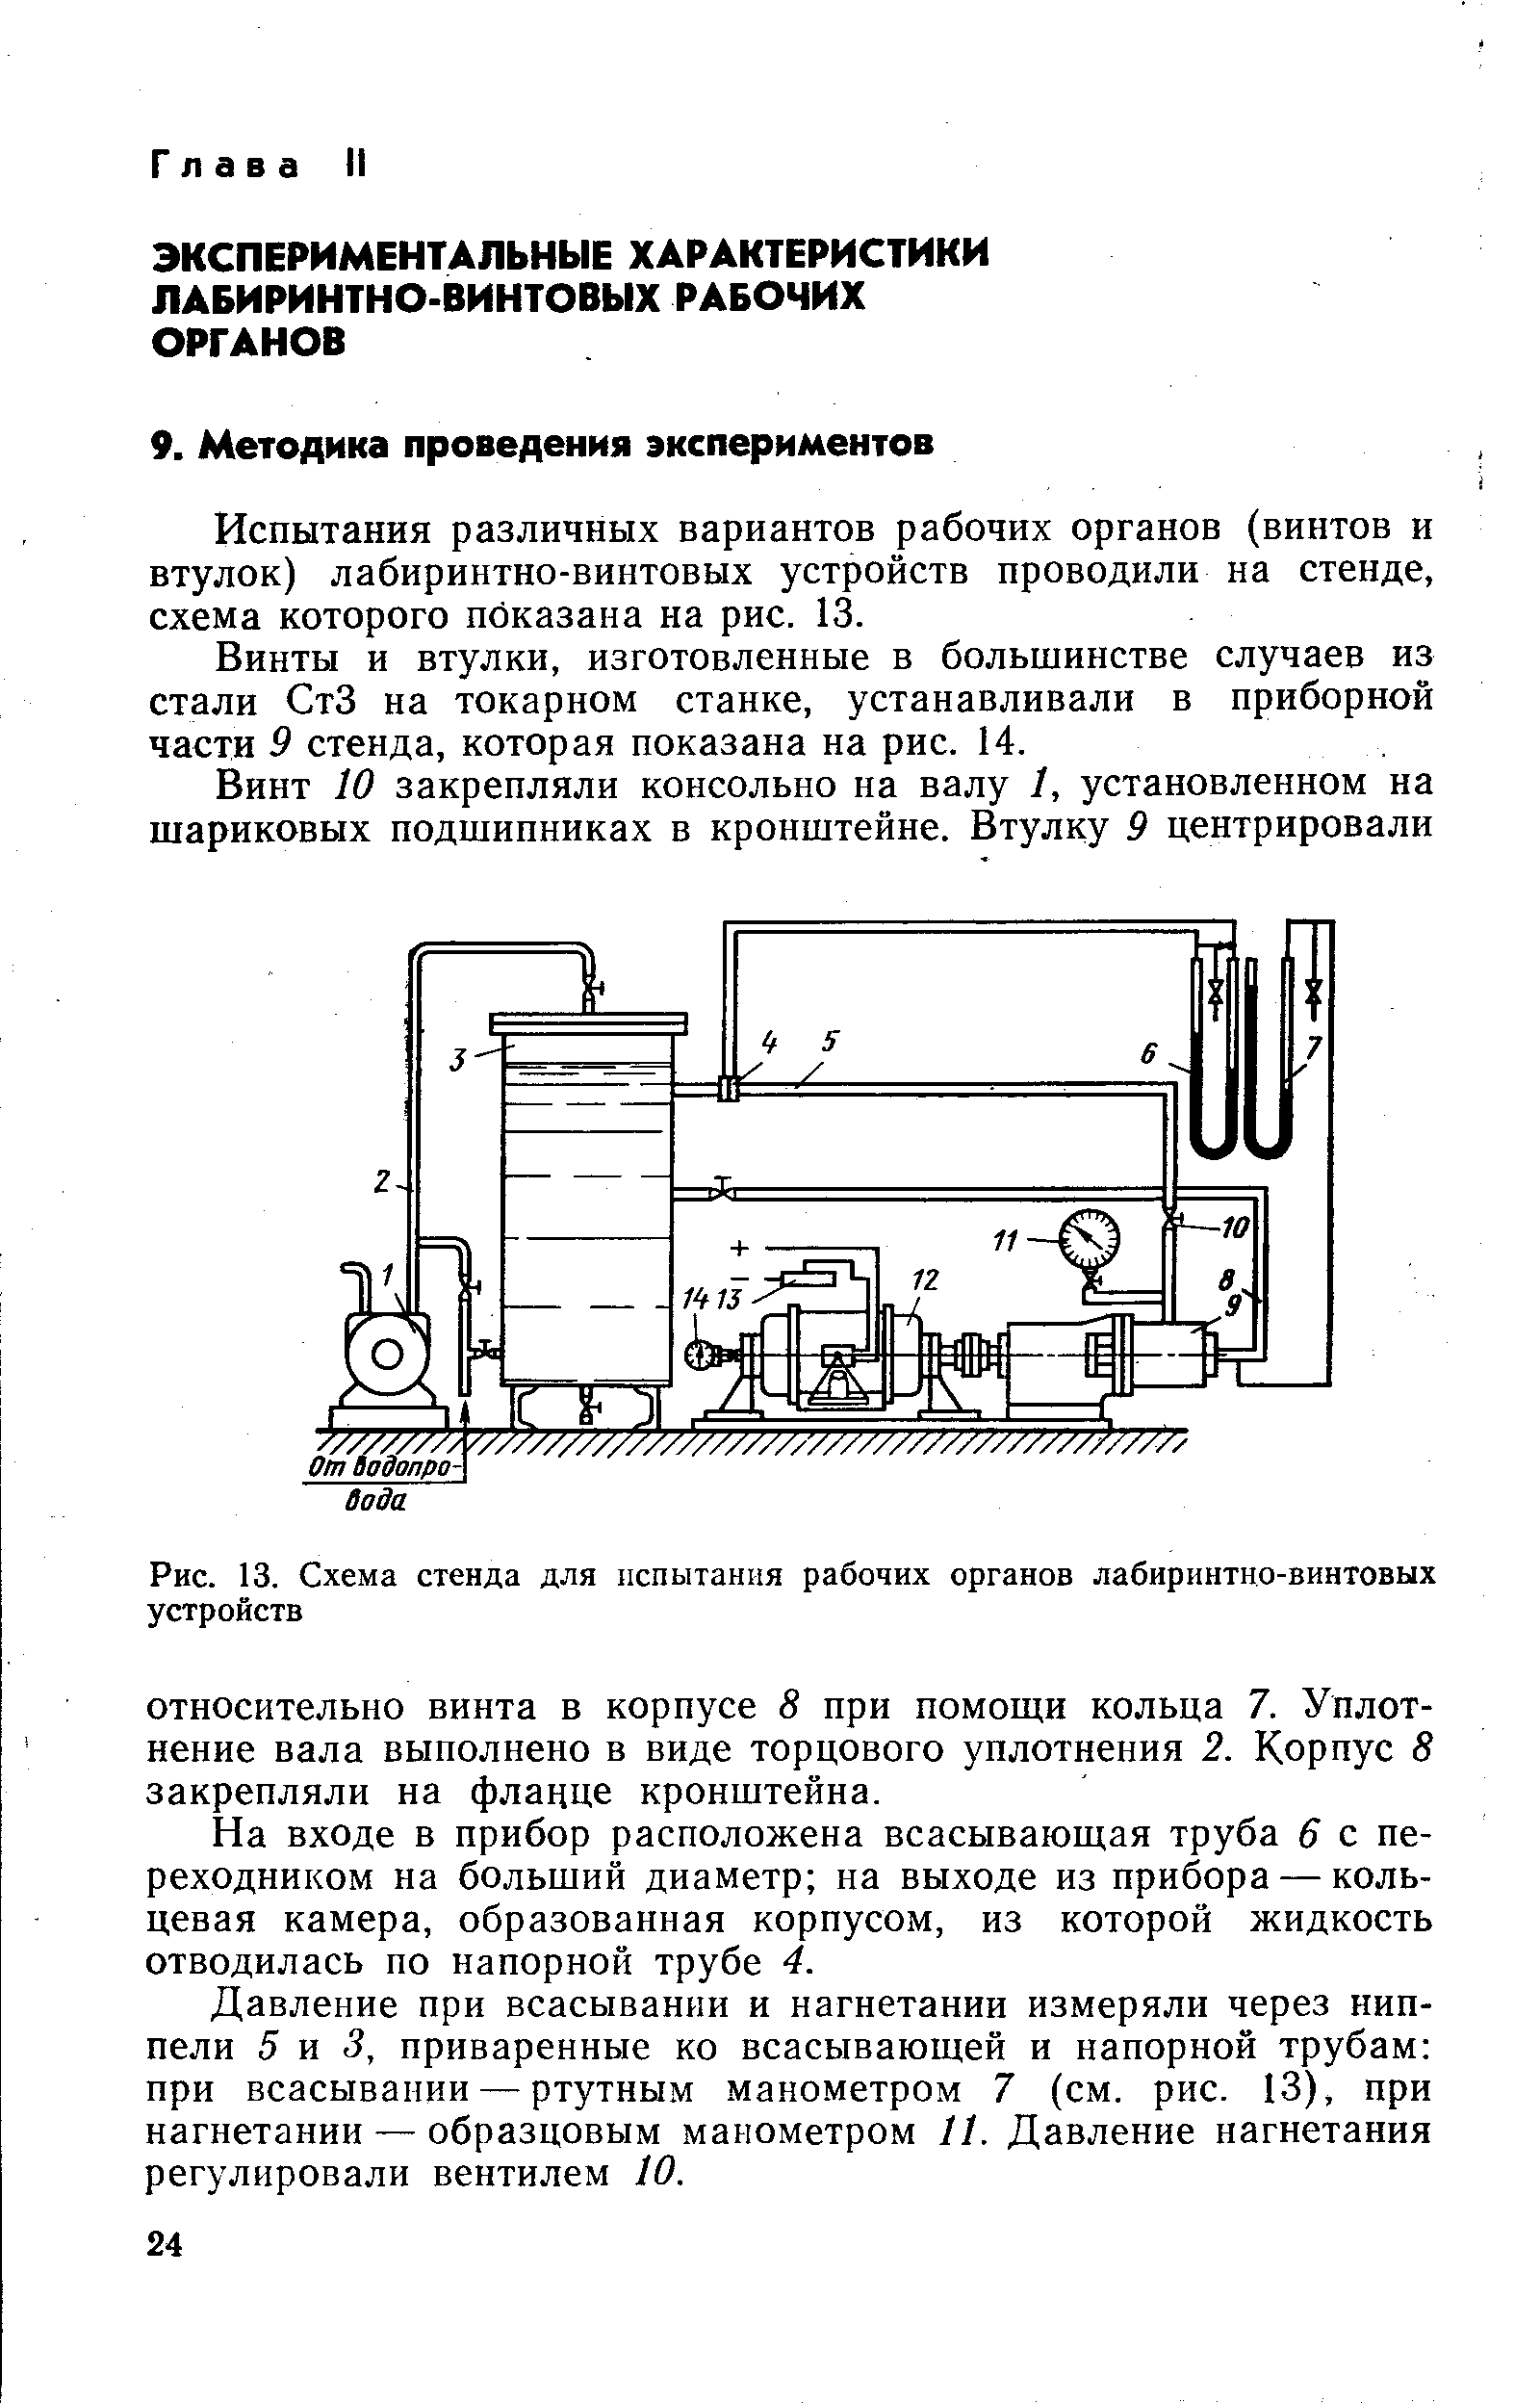 Испытания различных вариантов рабочих органов (винтов и втулок) лабиринтно-винтовых устройств проводили на стенде, схема которого показана на рис. 13.